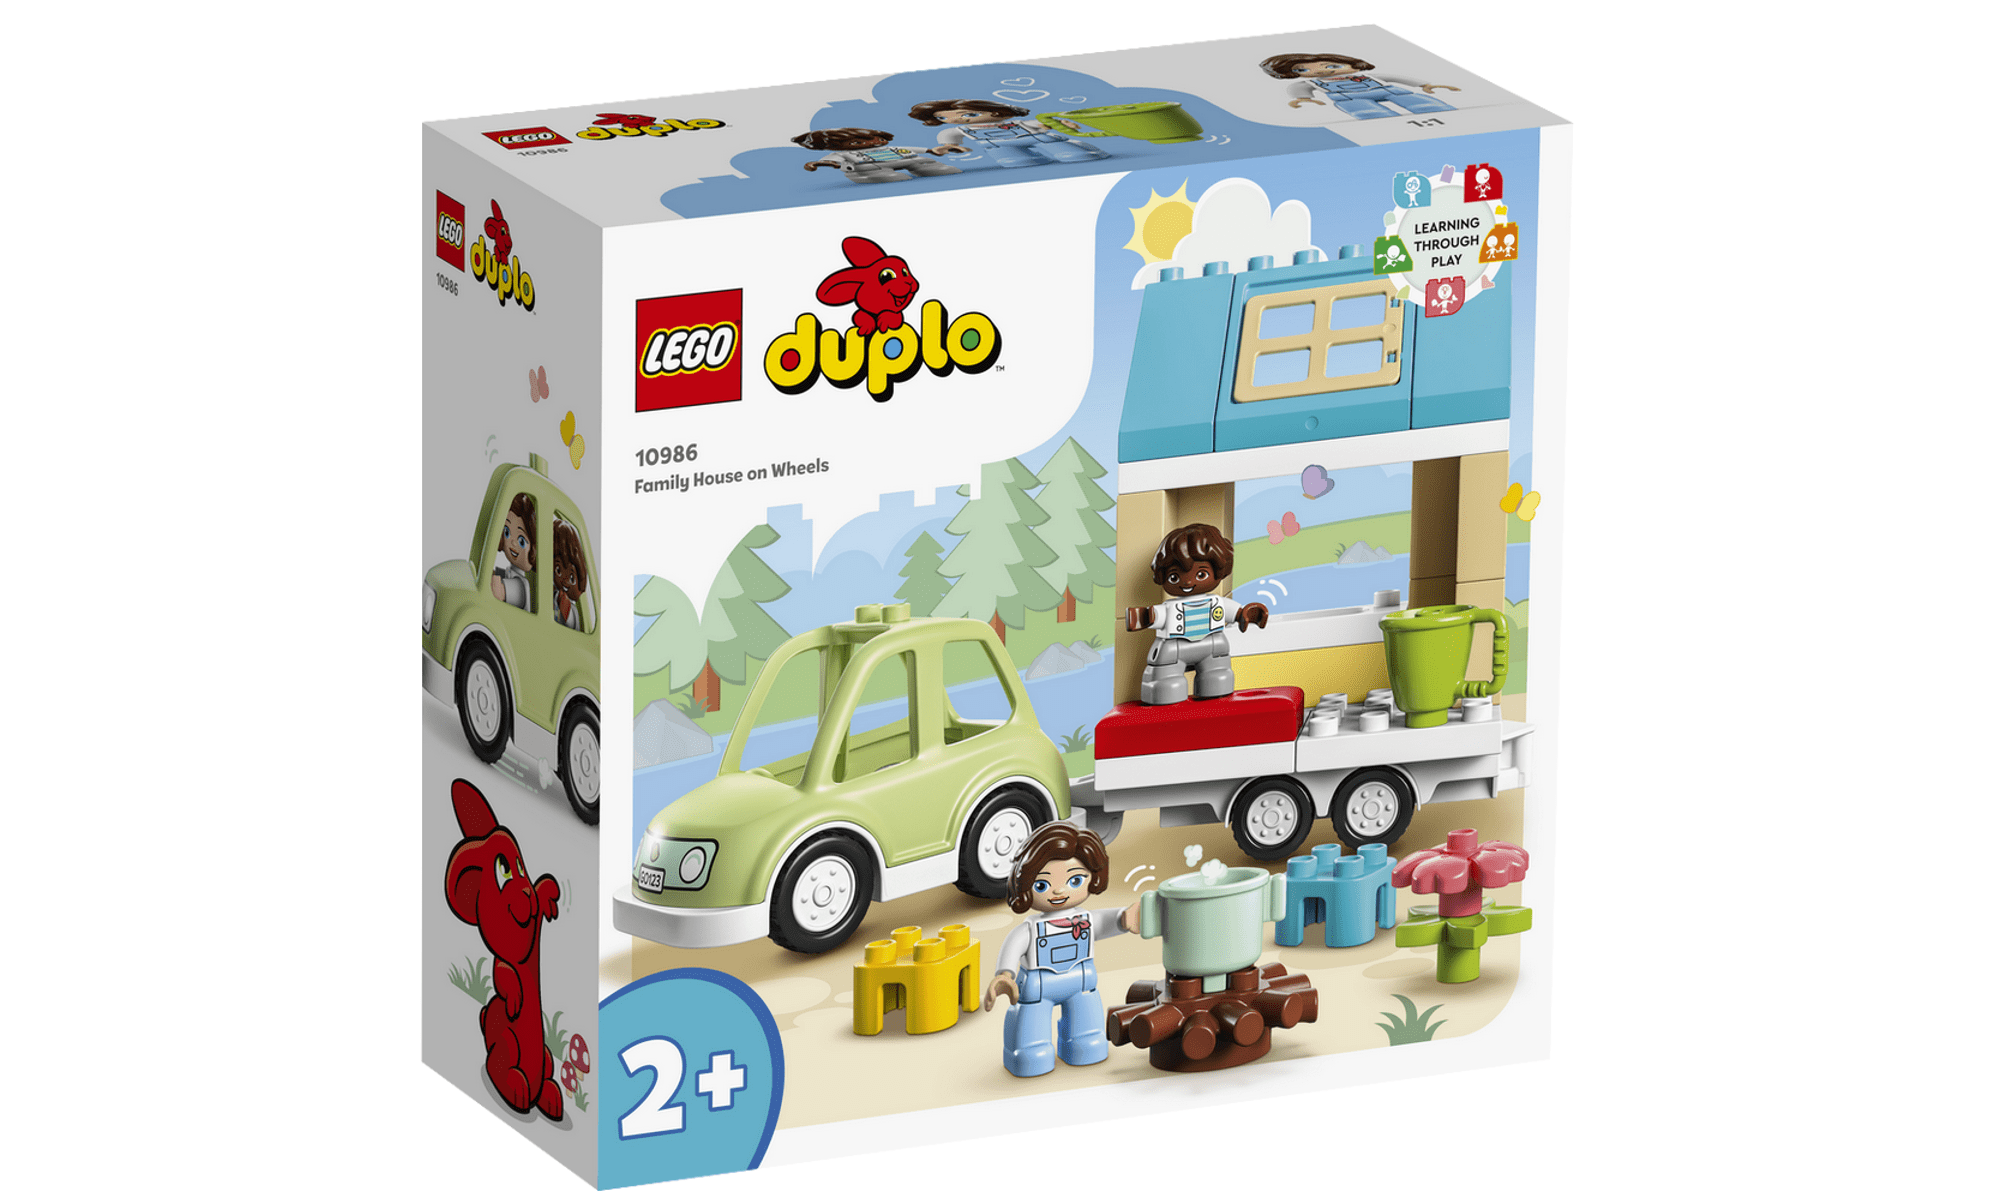 Lego Rodas Brinquedos Blocos Montar